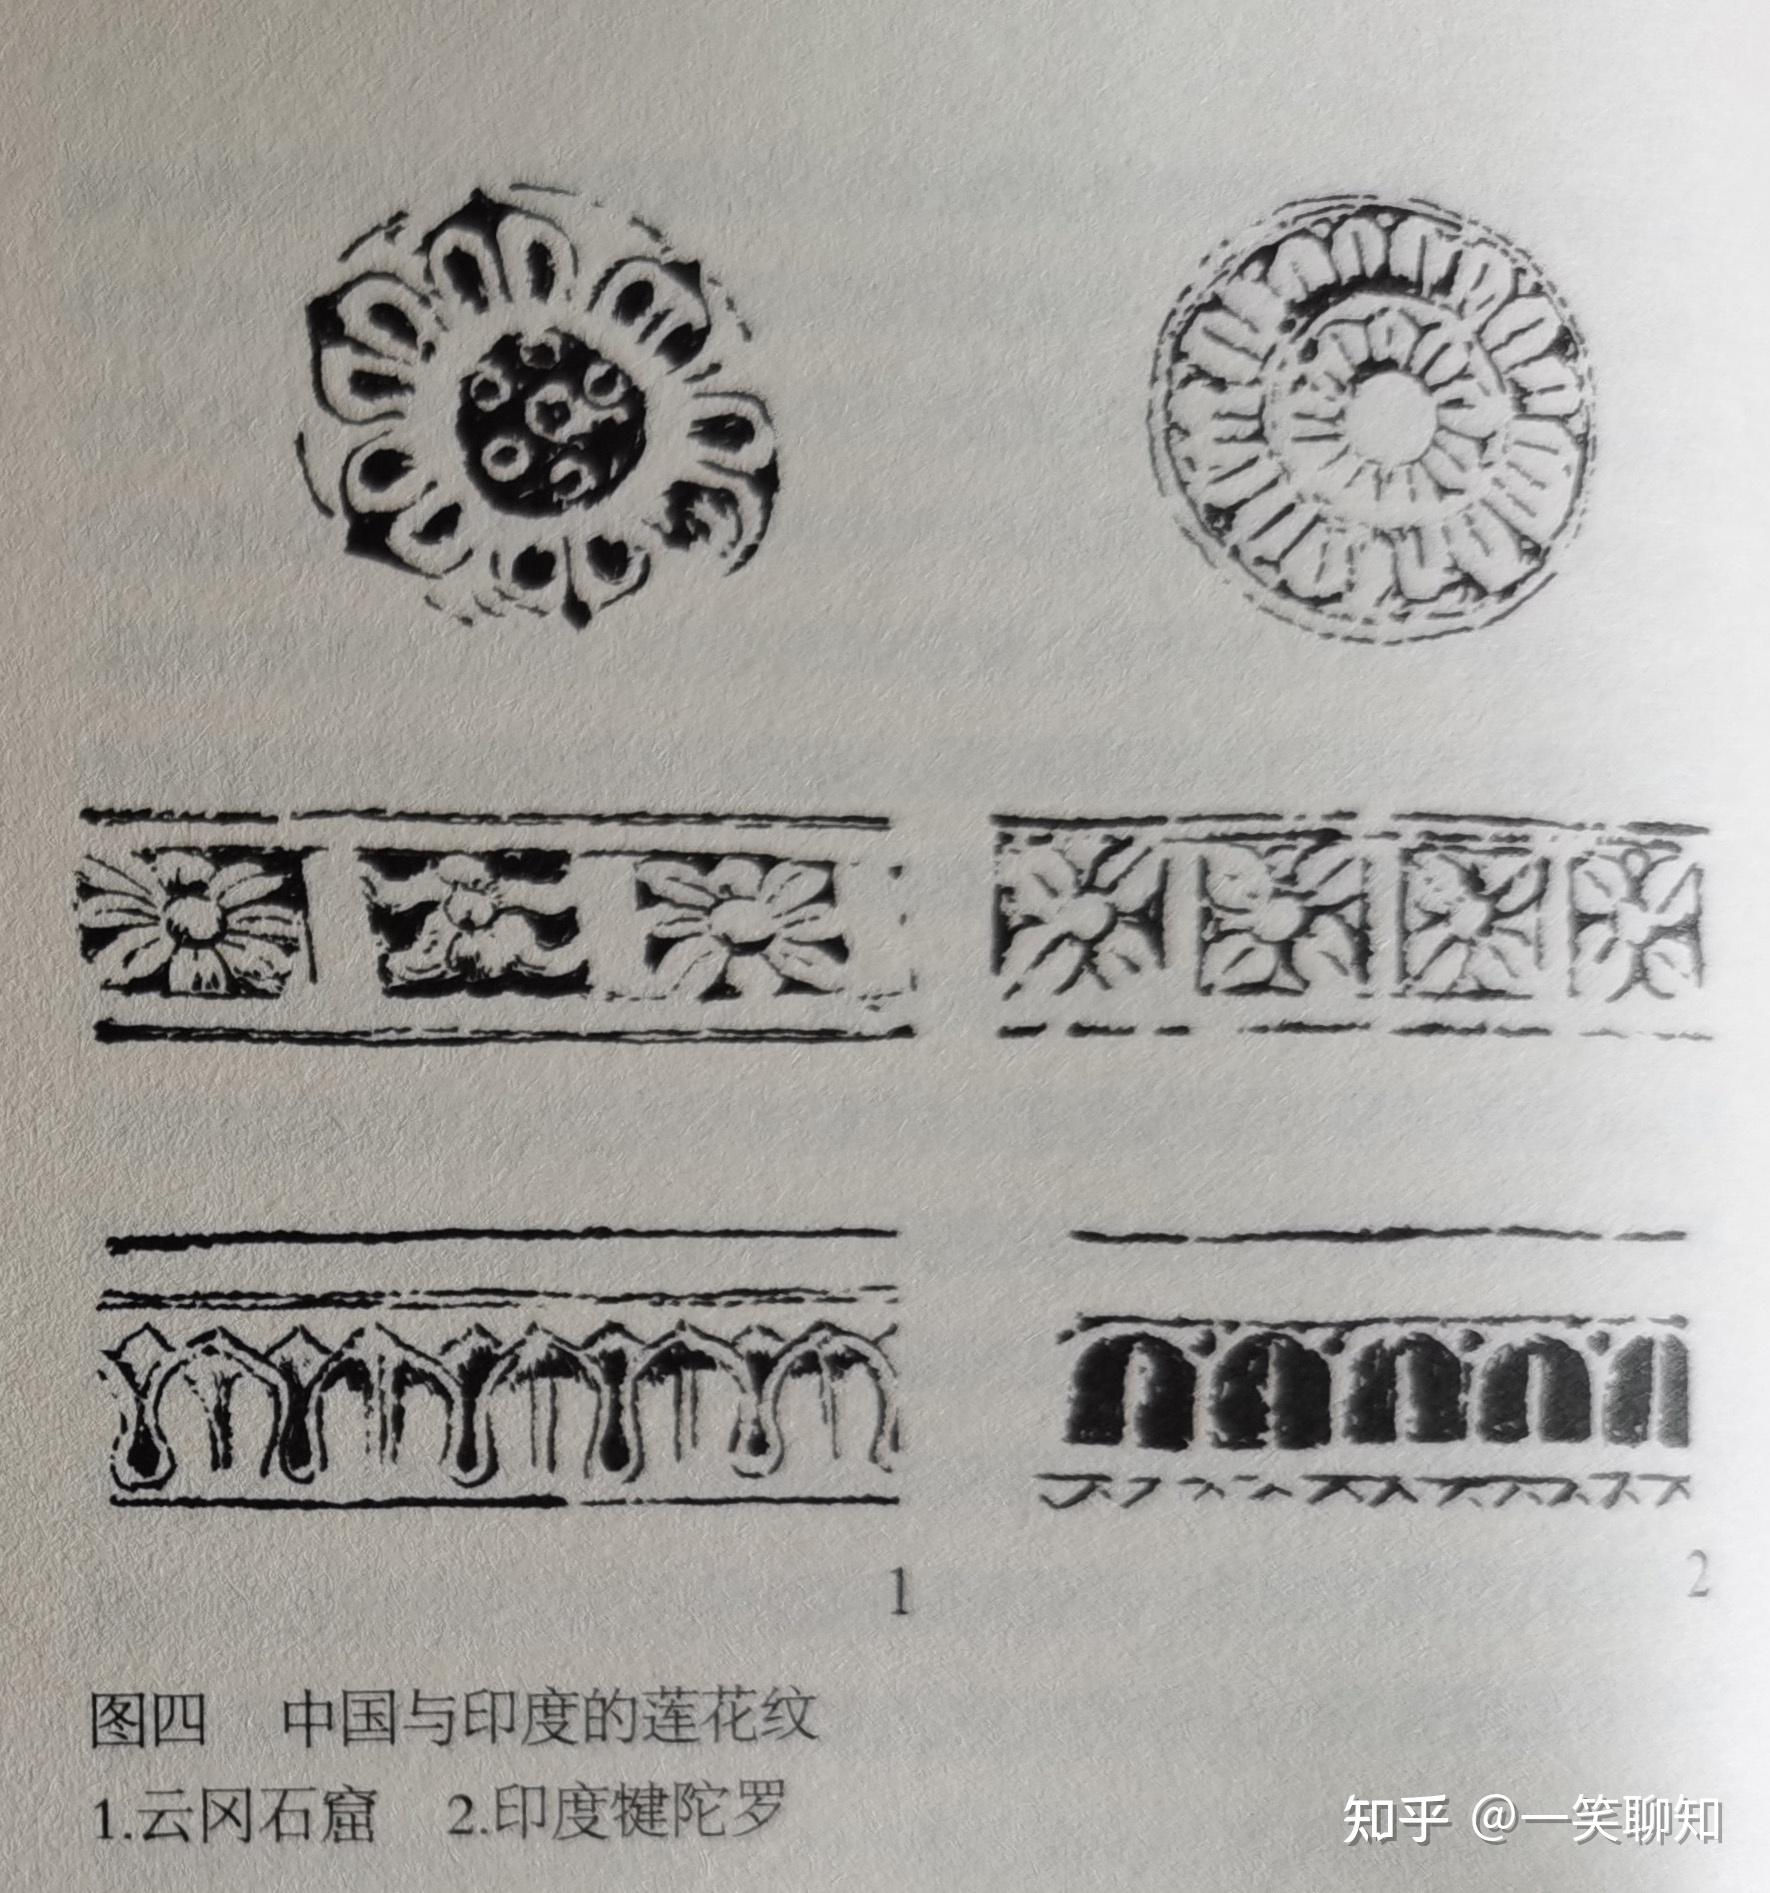 最初宝相花的主体最初来源于秦汉时期的莲花纹样,到了魏晋南北朝佛教